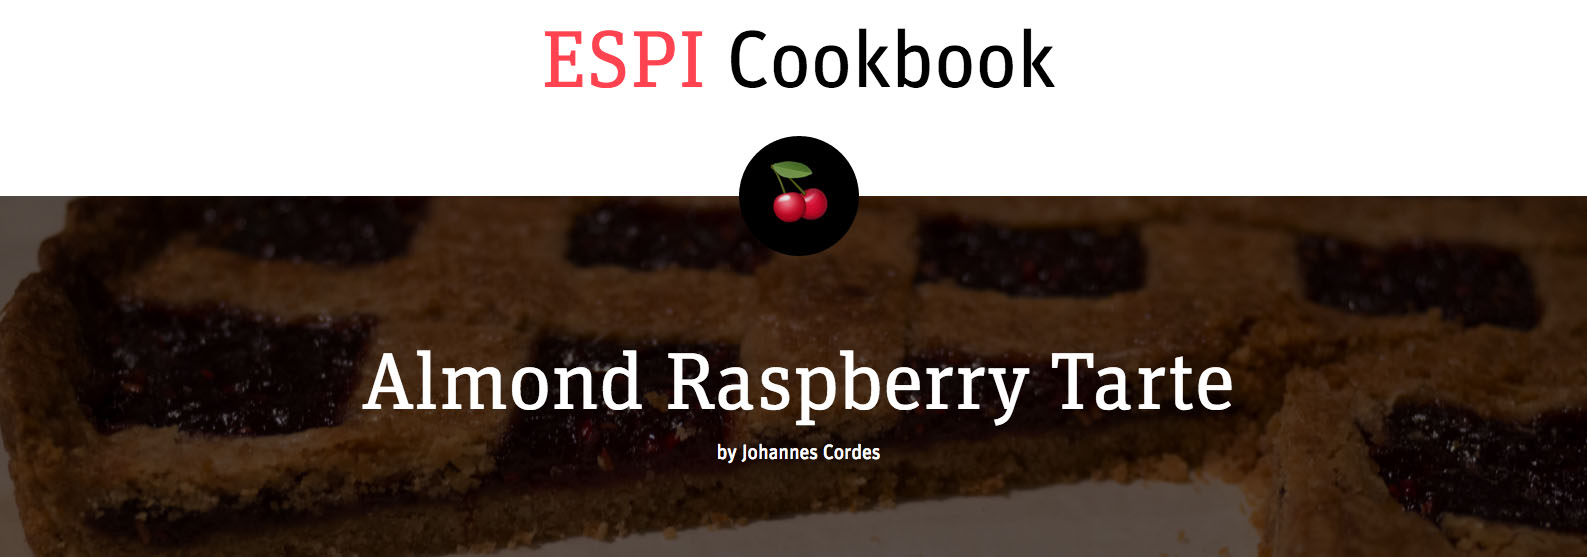 Screenshot ESPI Cookbook